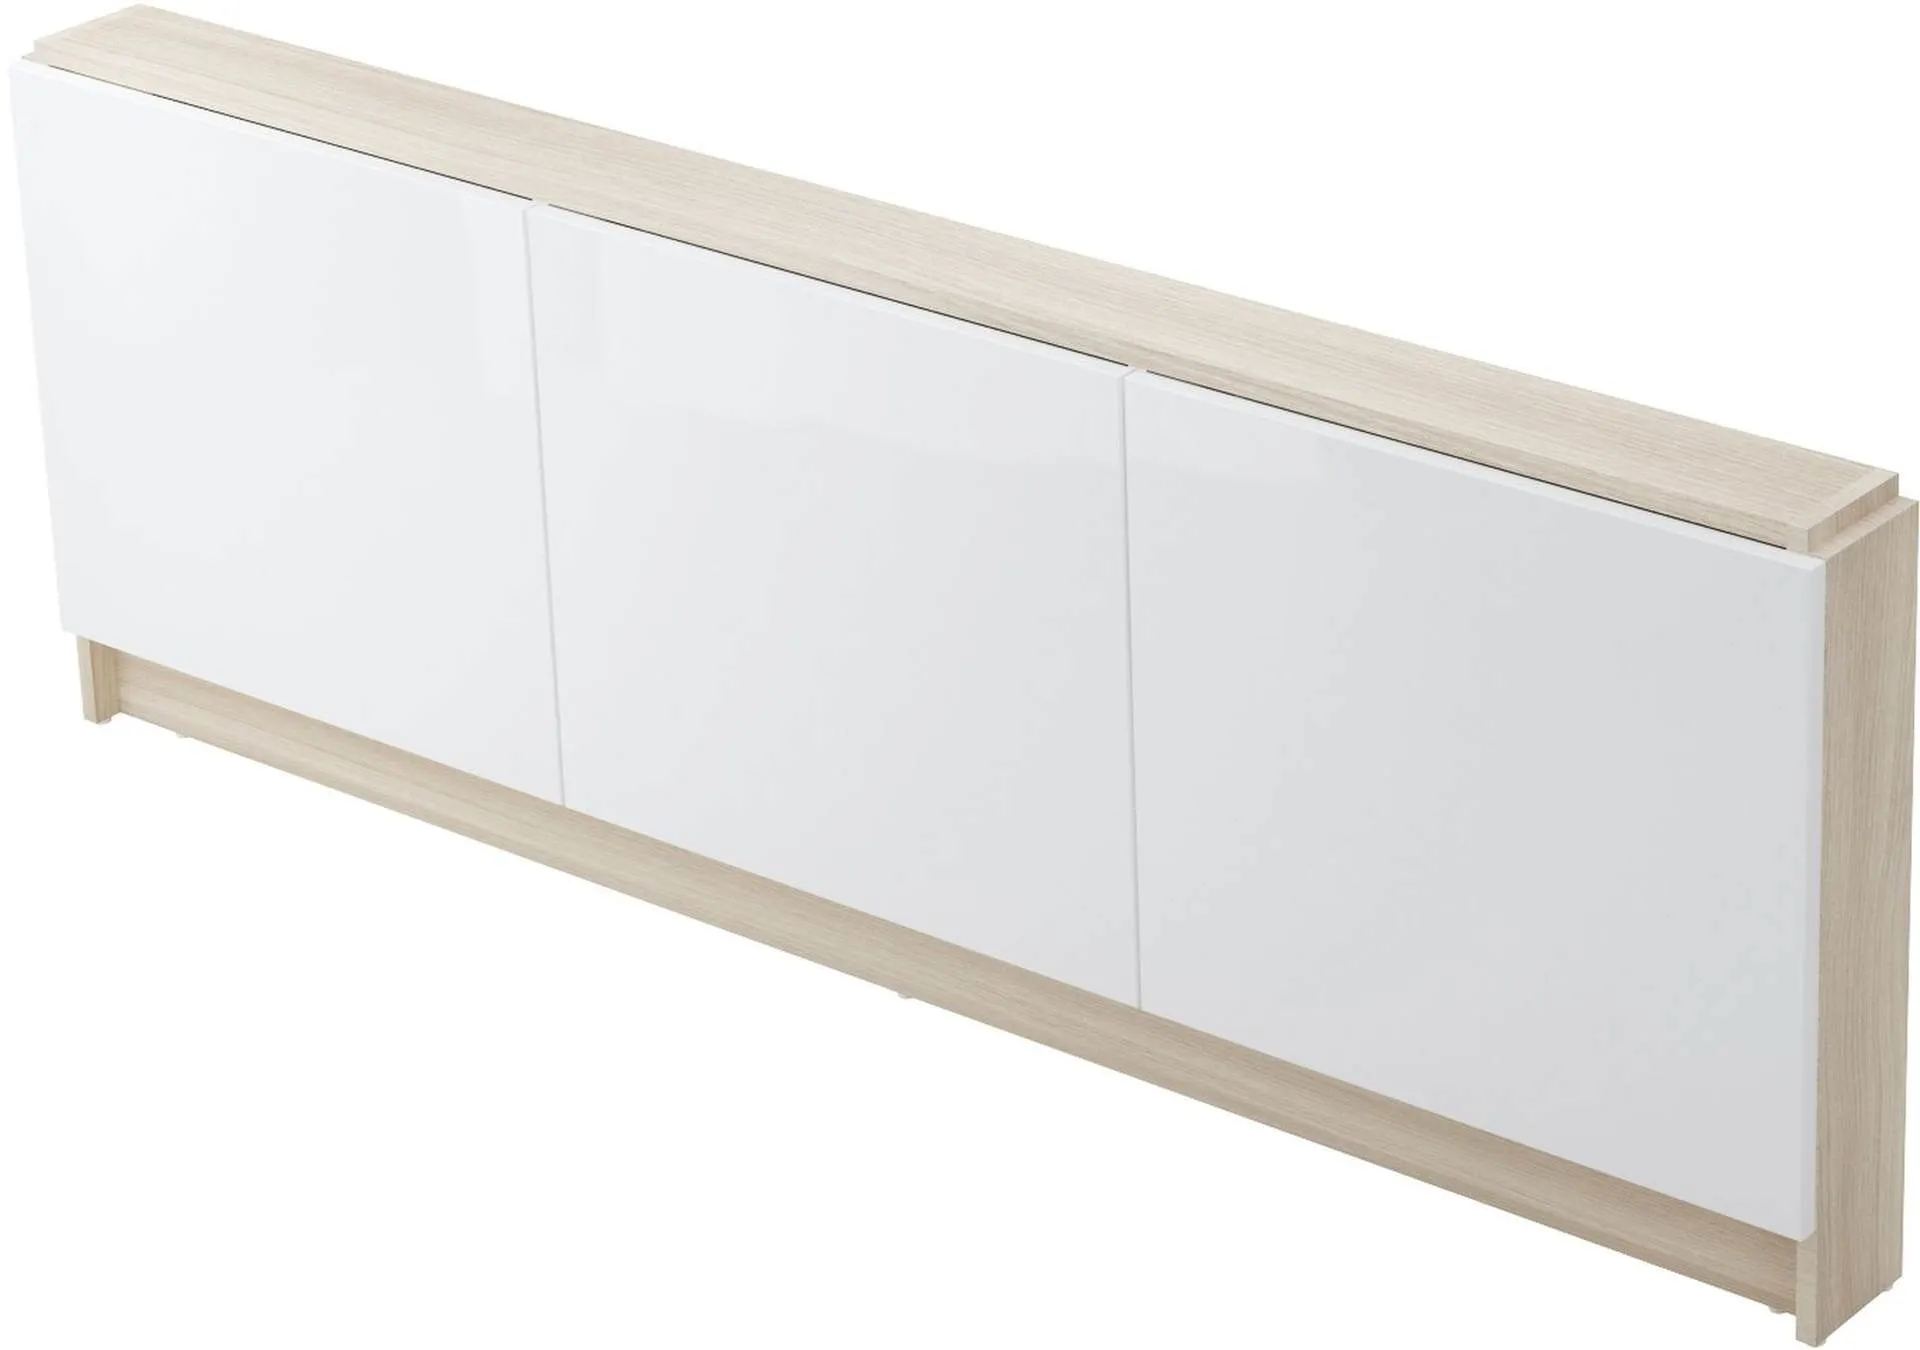 Panel meblowy do wanny 160 cm Cersanit Smart biały S568-024